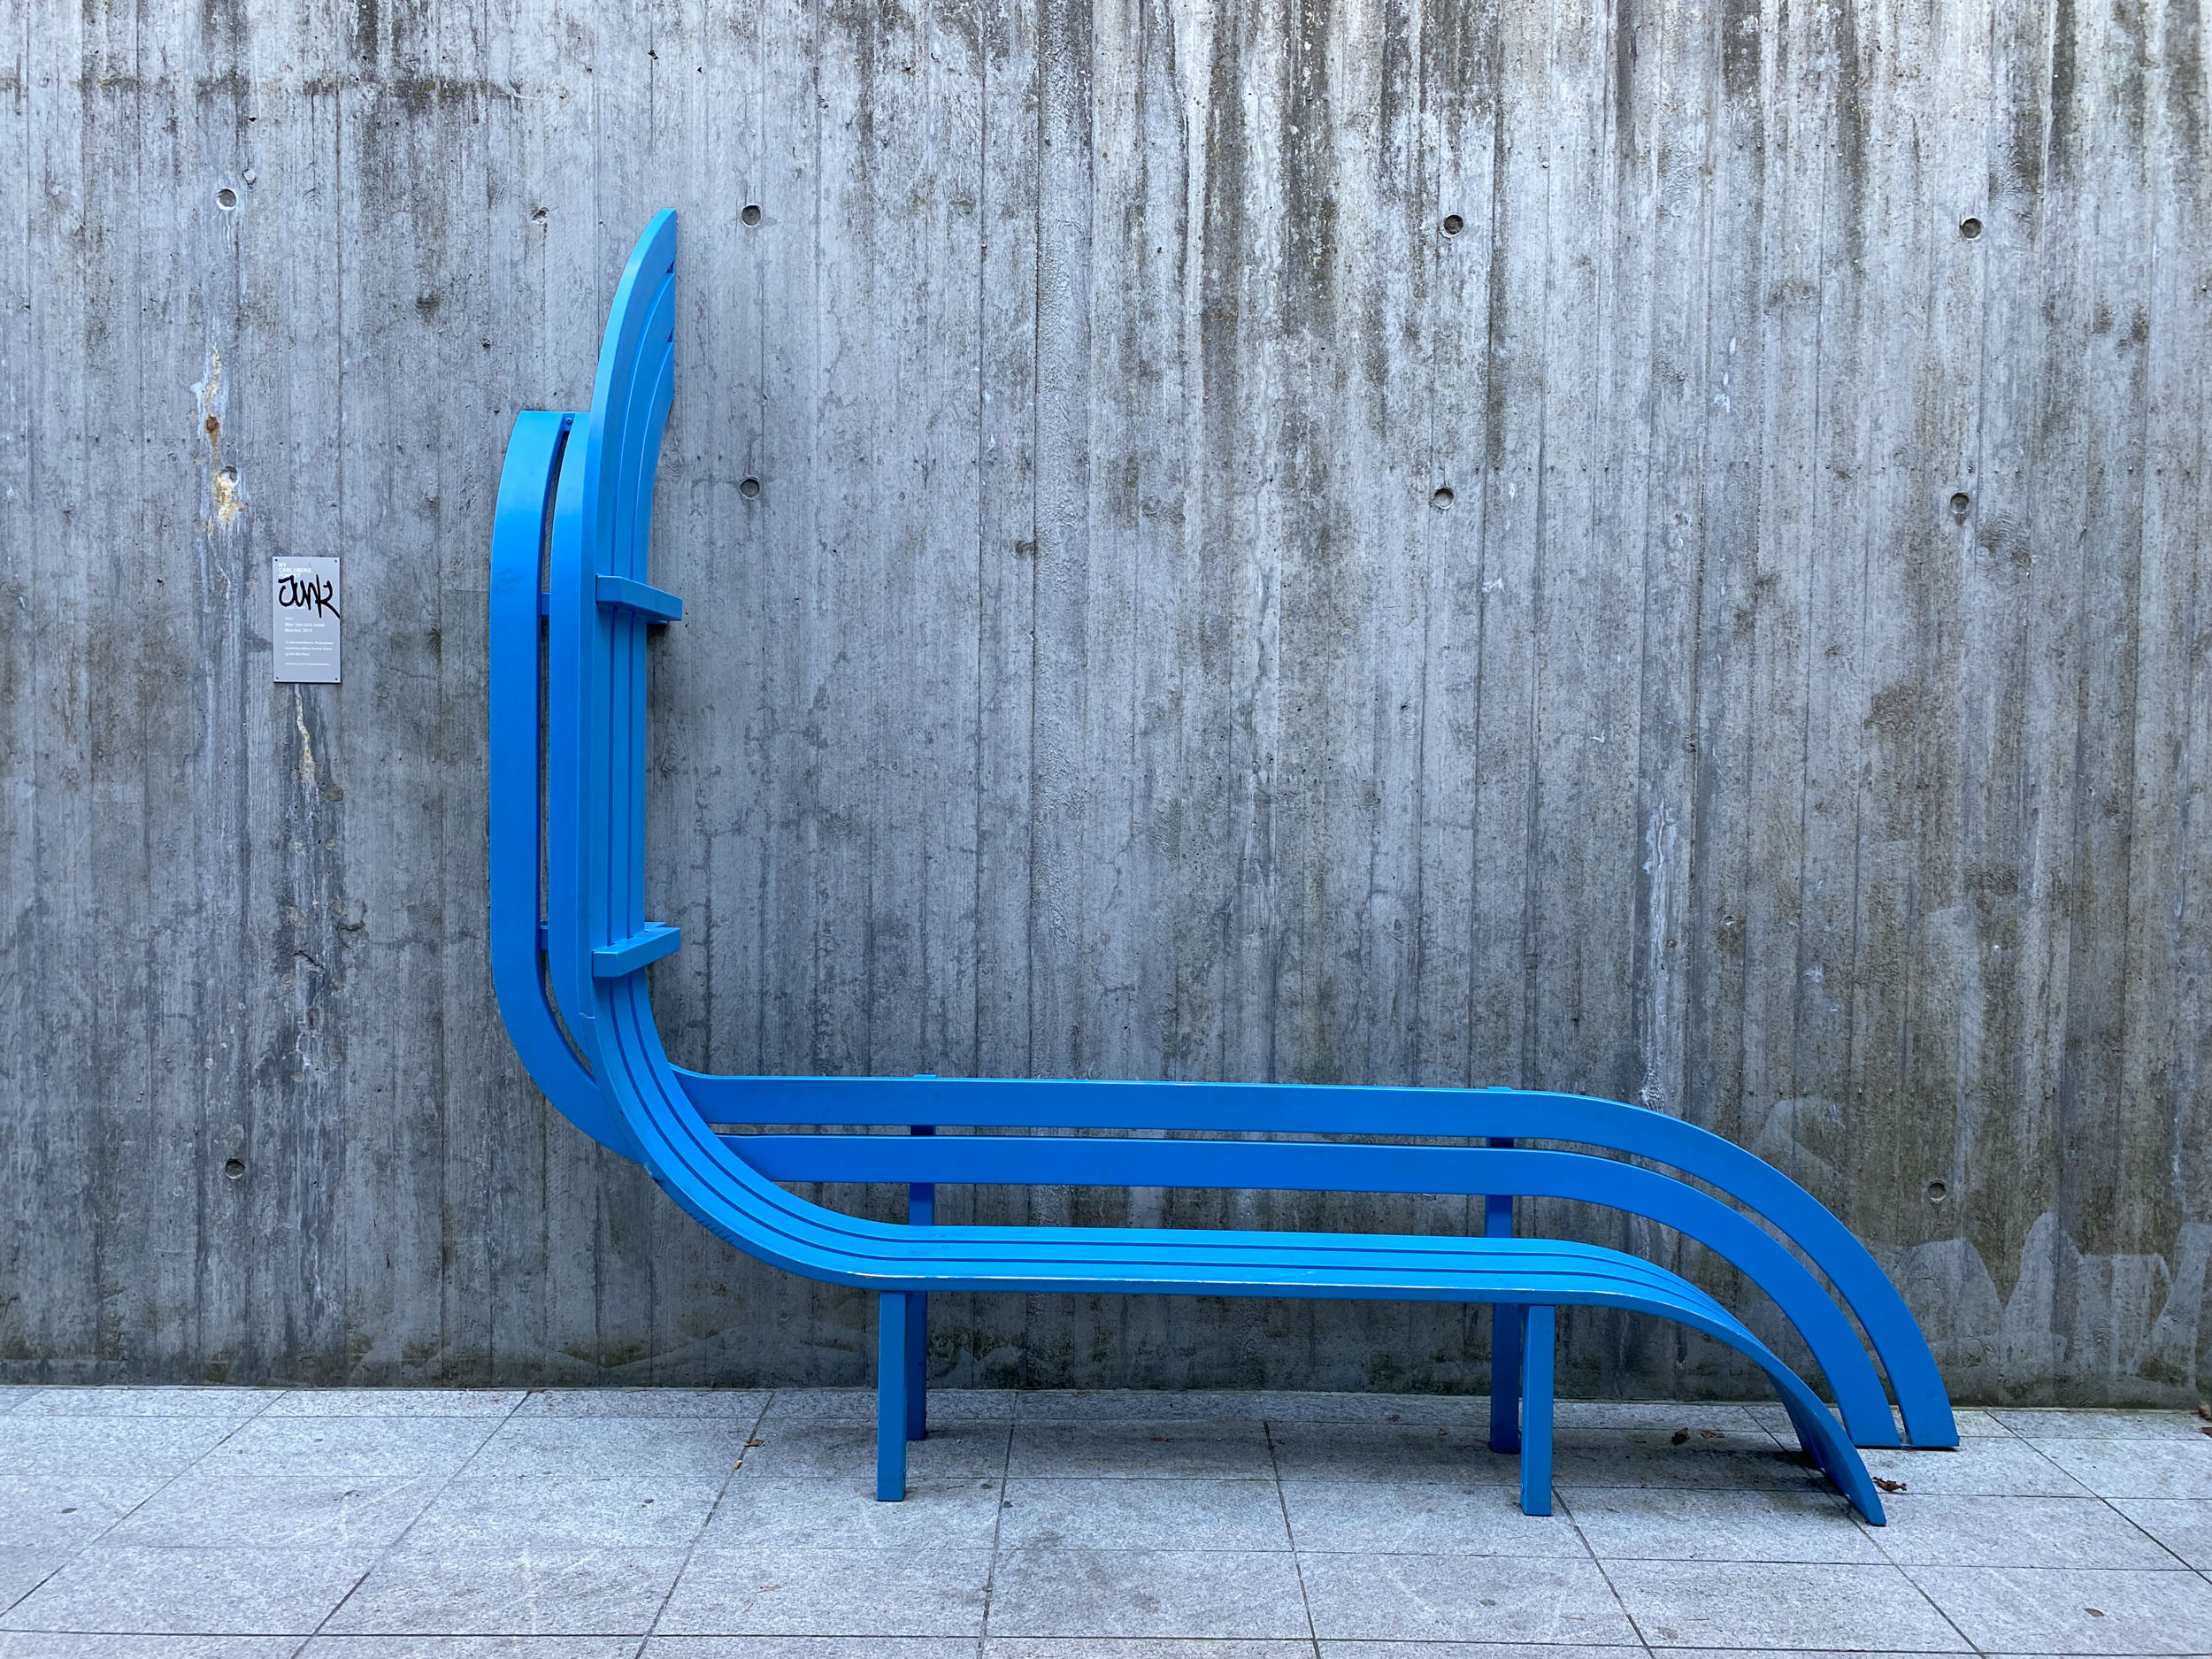 foto.esel.at: Jeppe Hein - Blue Modified Social Bench (NY Carlsberg Fondet for Den Blå Planet, Copenhagen, 14.8.2020)
